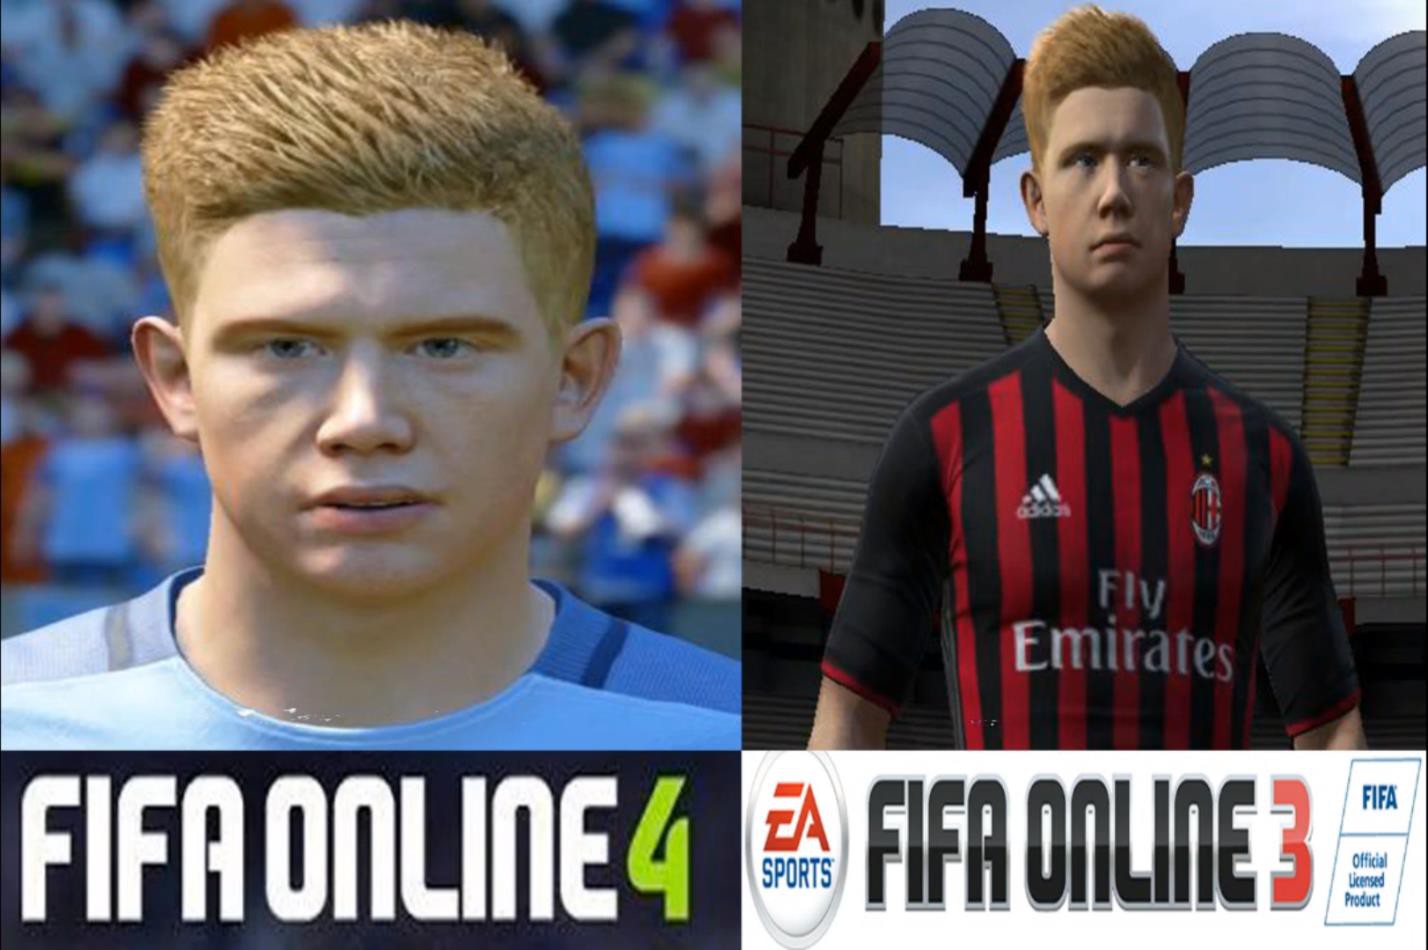 Cách đổi tên trong FIFA Online 4 cực đơn giản